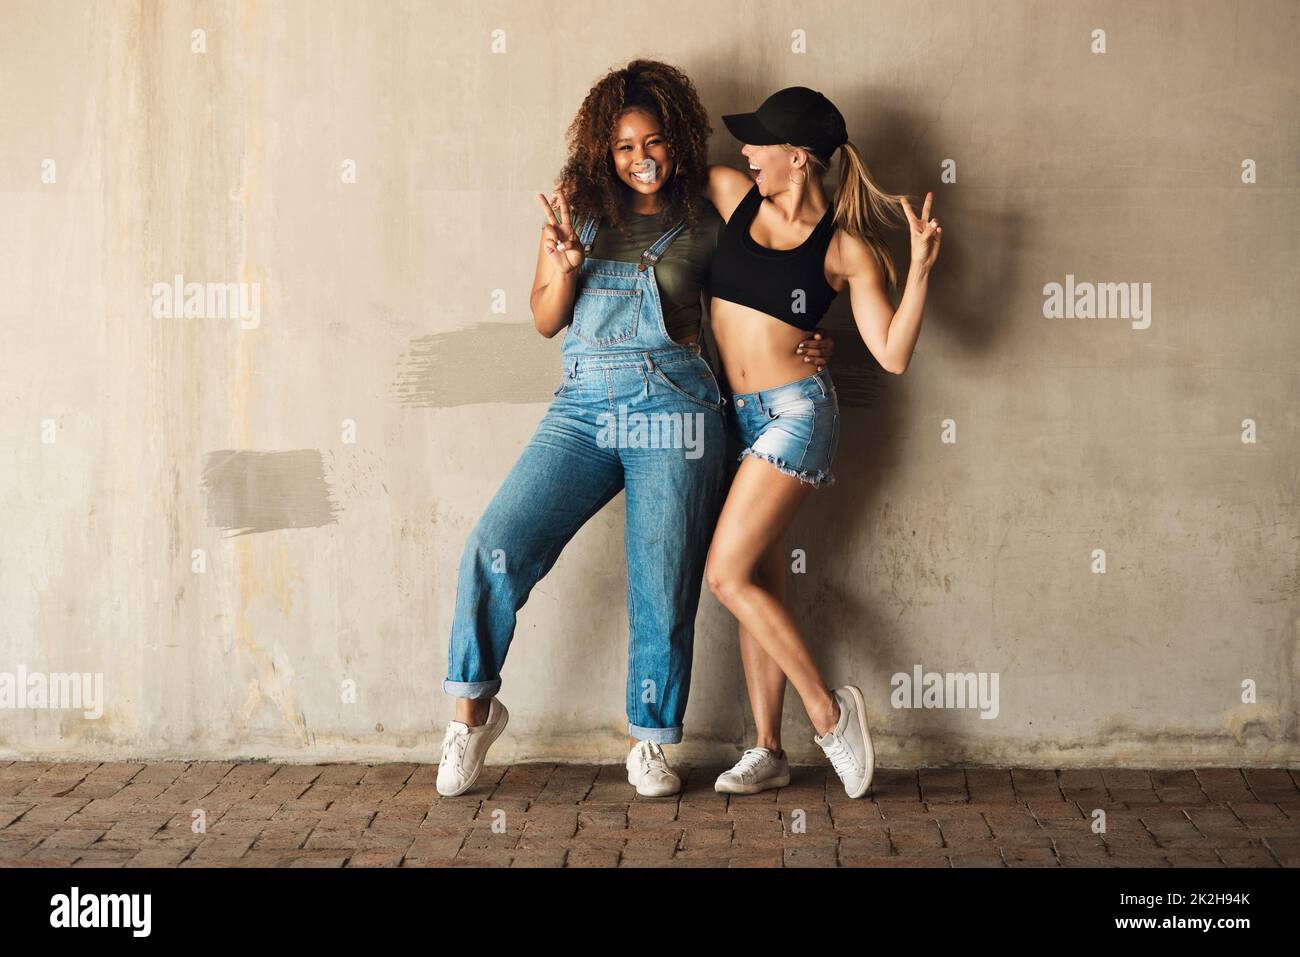 Sappiamo come Buon divertimento. Ritratto di due giovani donne allegre in posa per una foto mentre si appoggia contro una parete esterna durante il giorno. Foto Stock